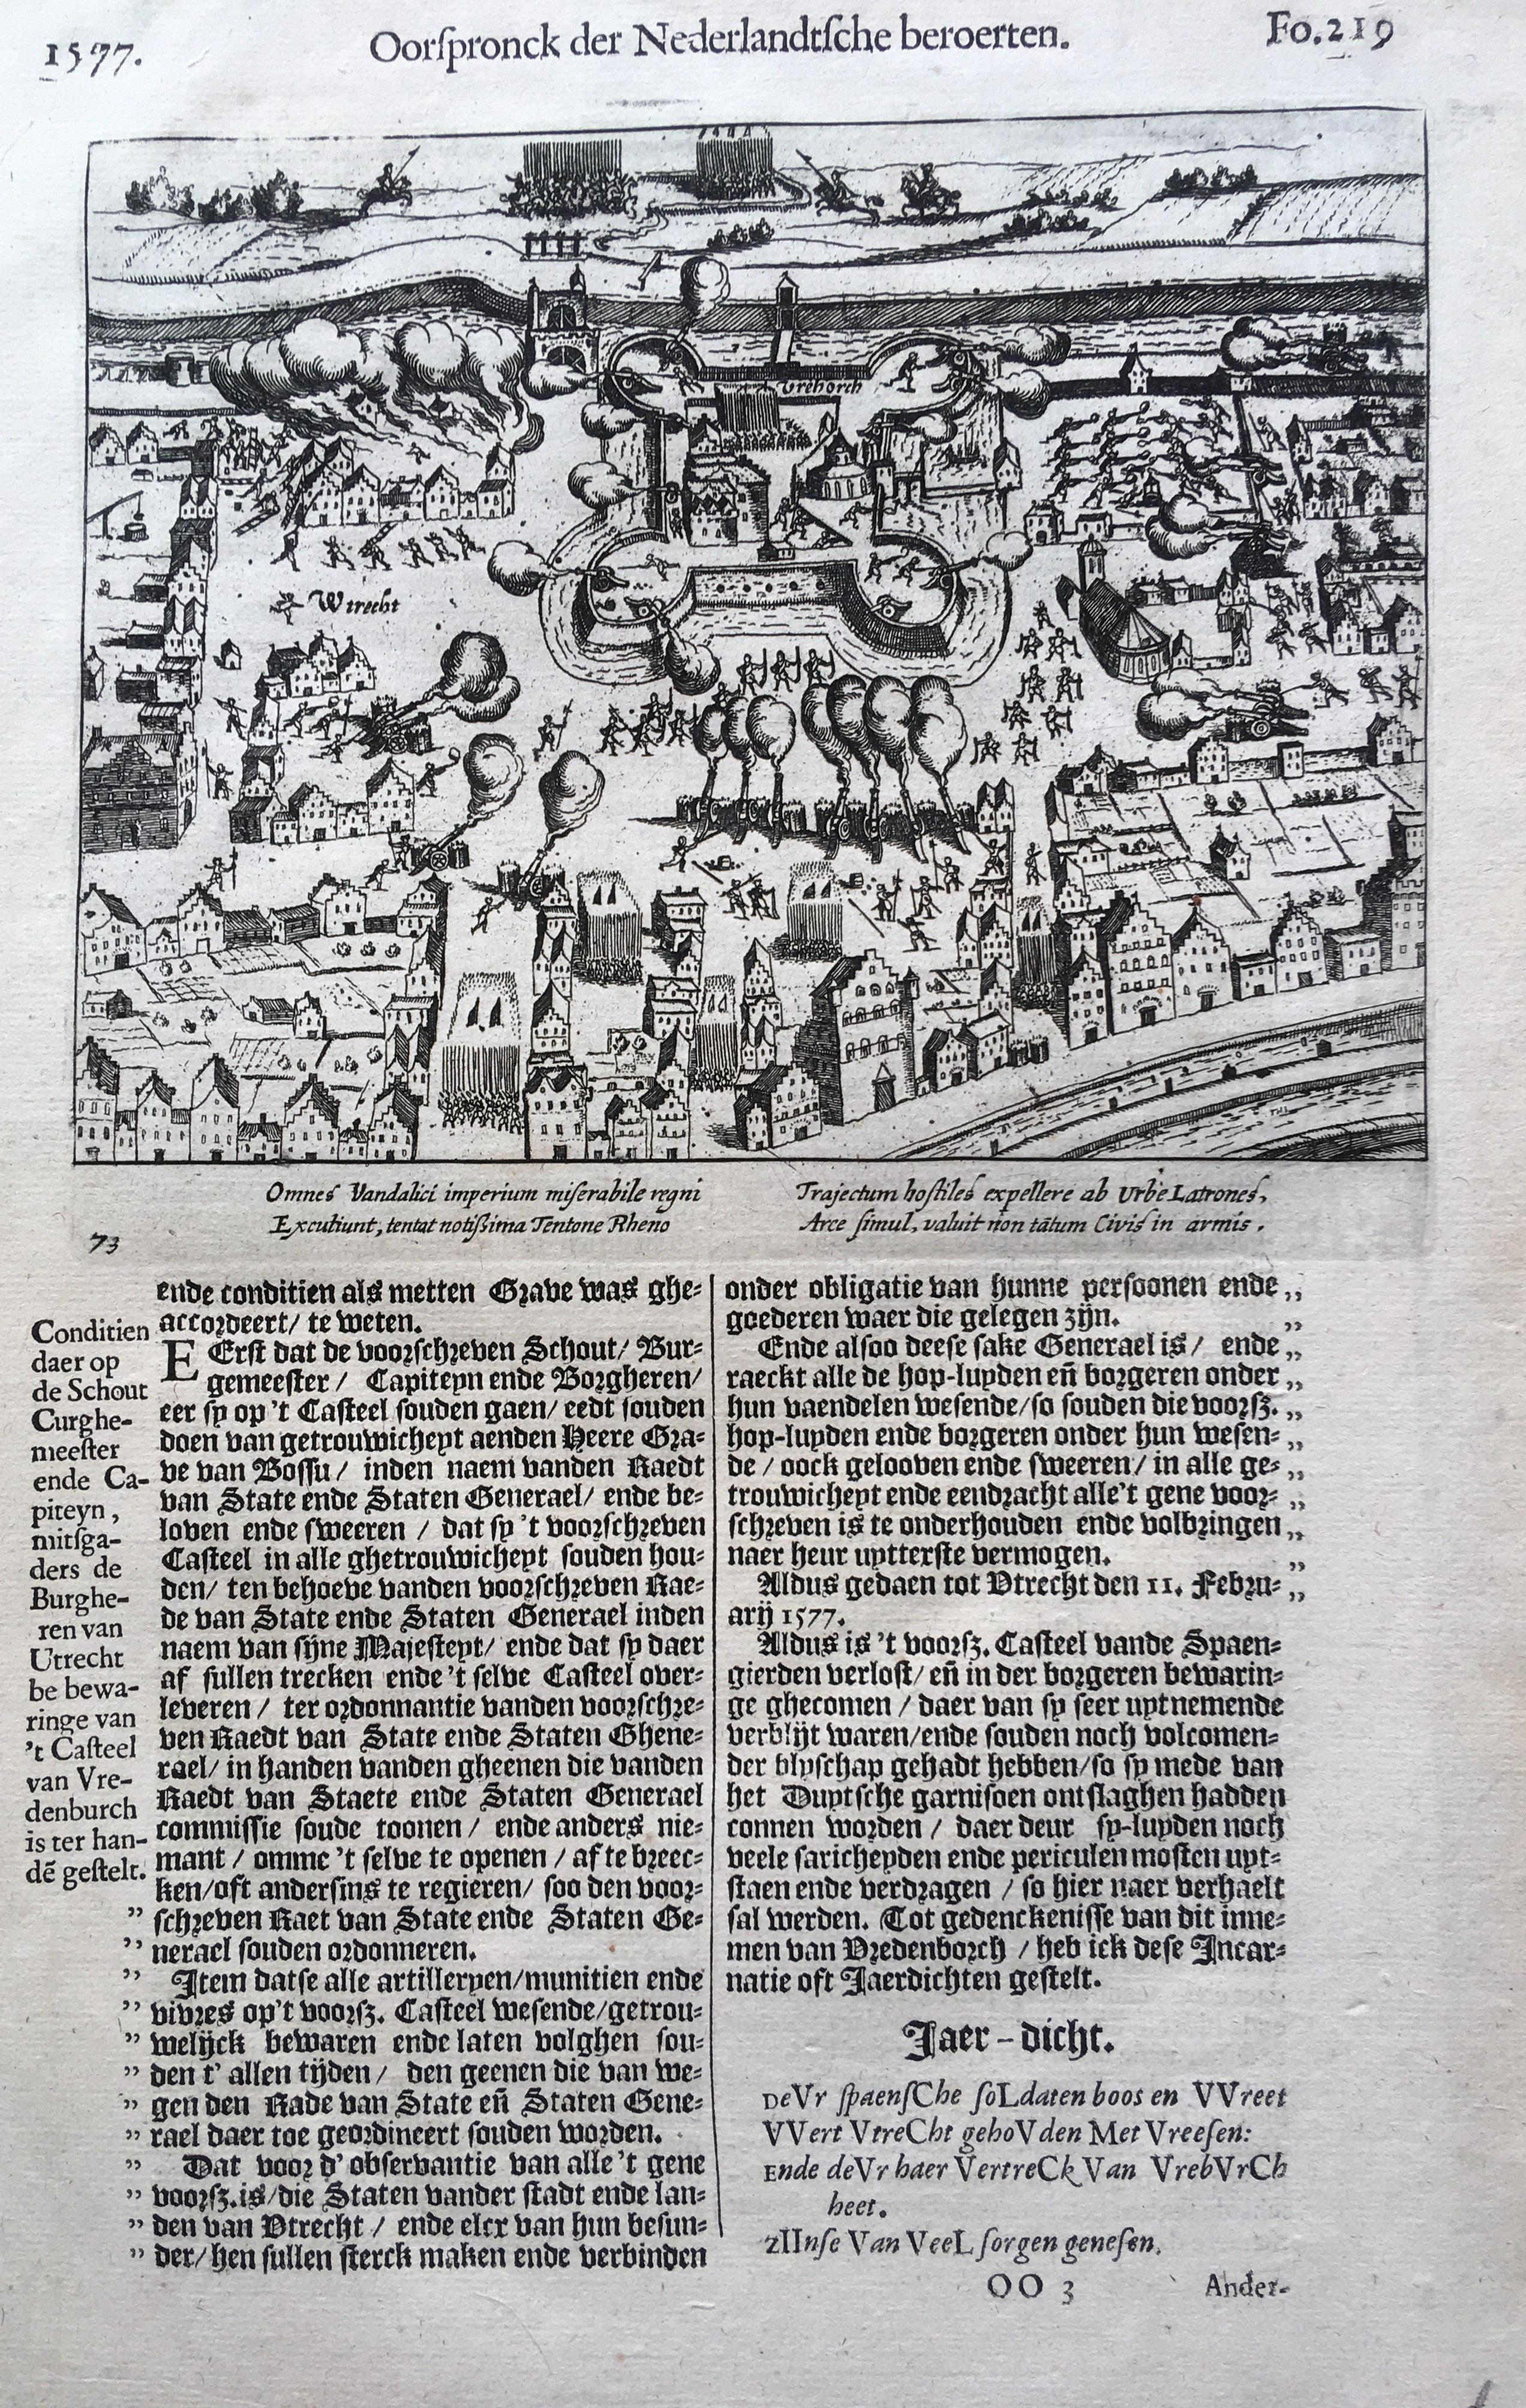 Het Beleg van Vredenburg, 1577 - ca. 1613